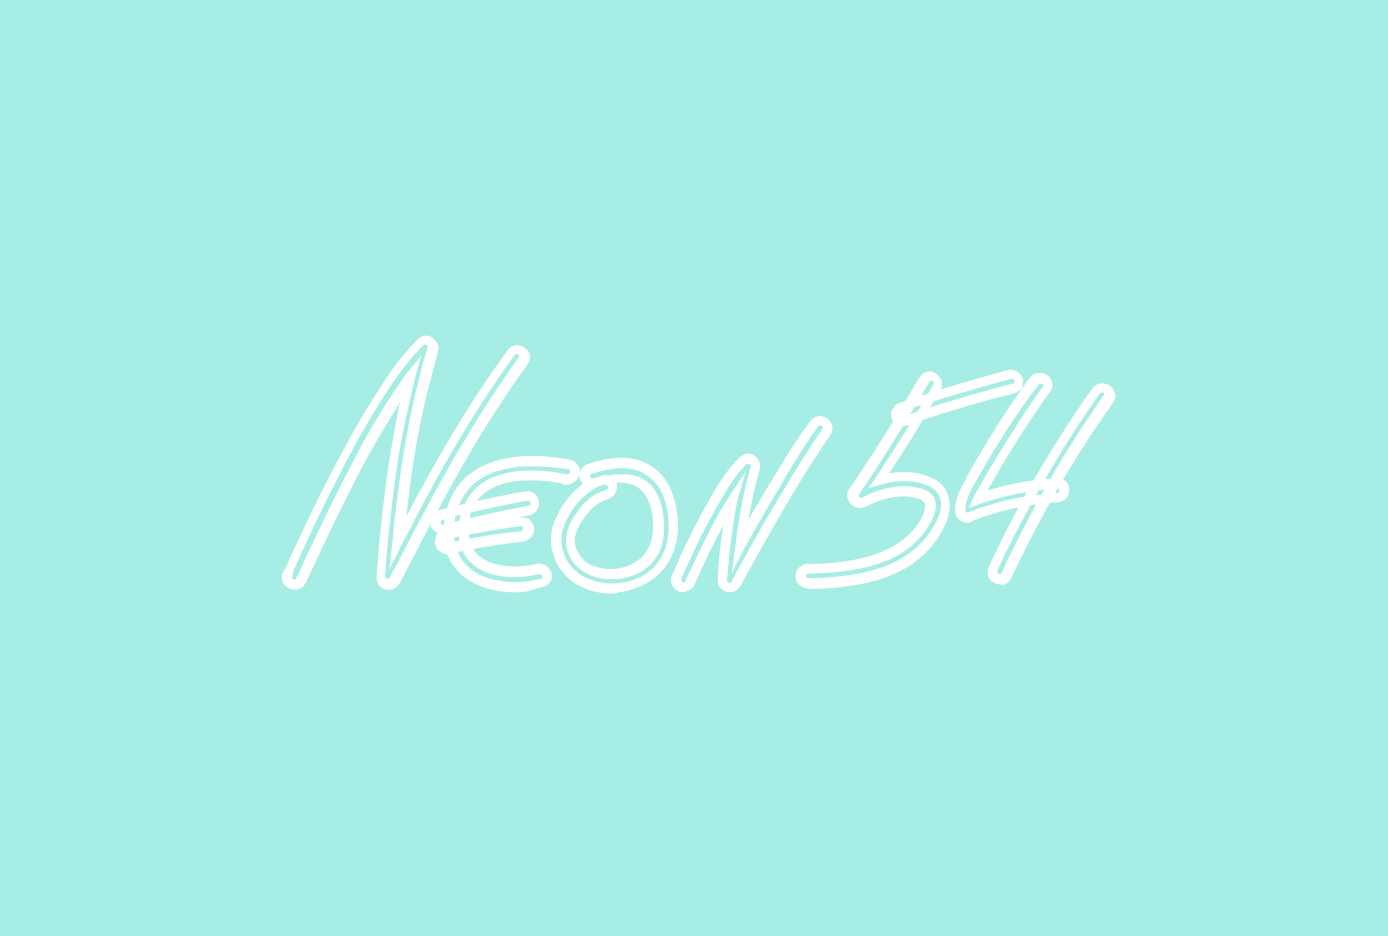 neon54 casino, casino online